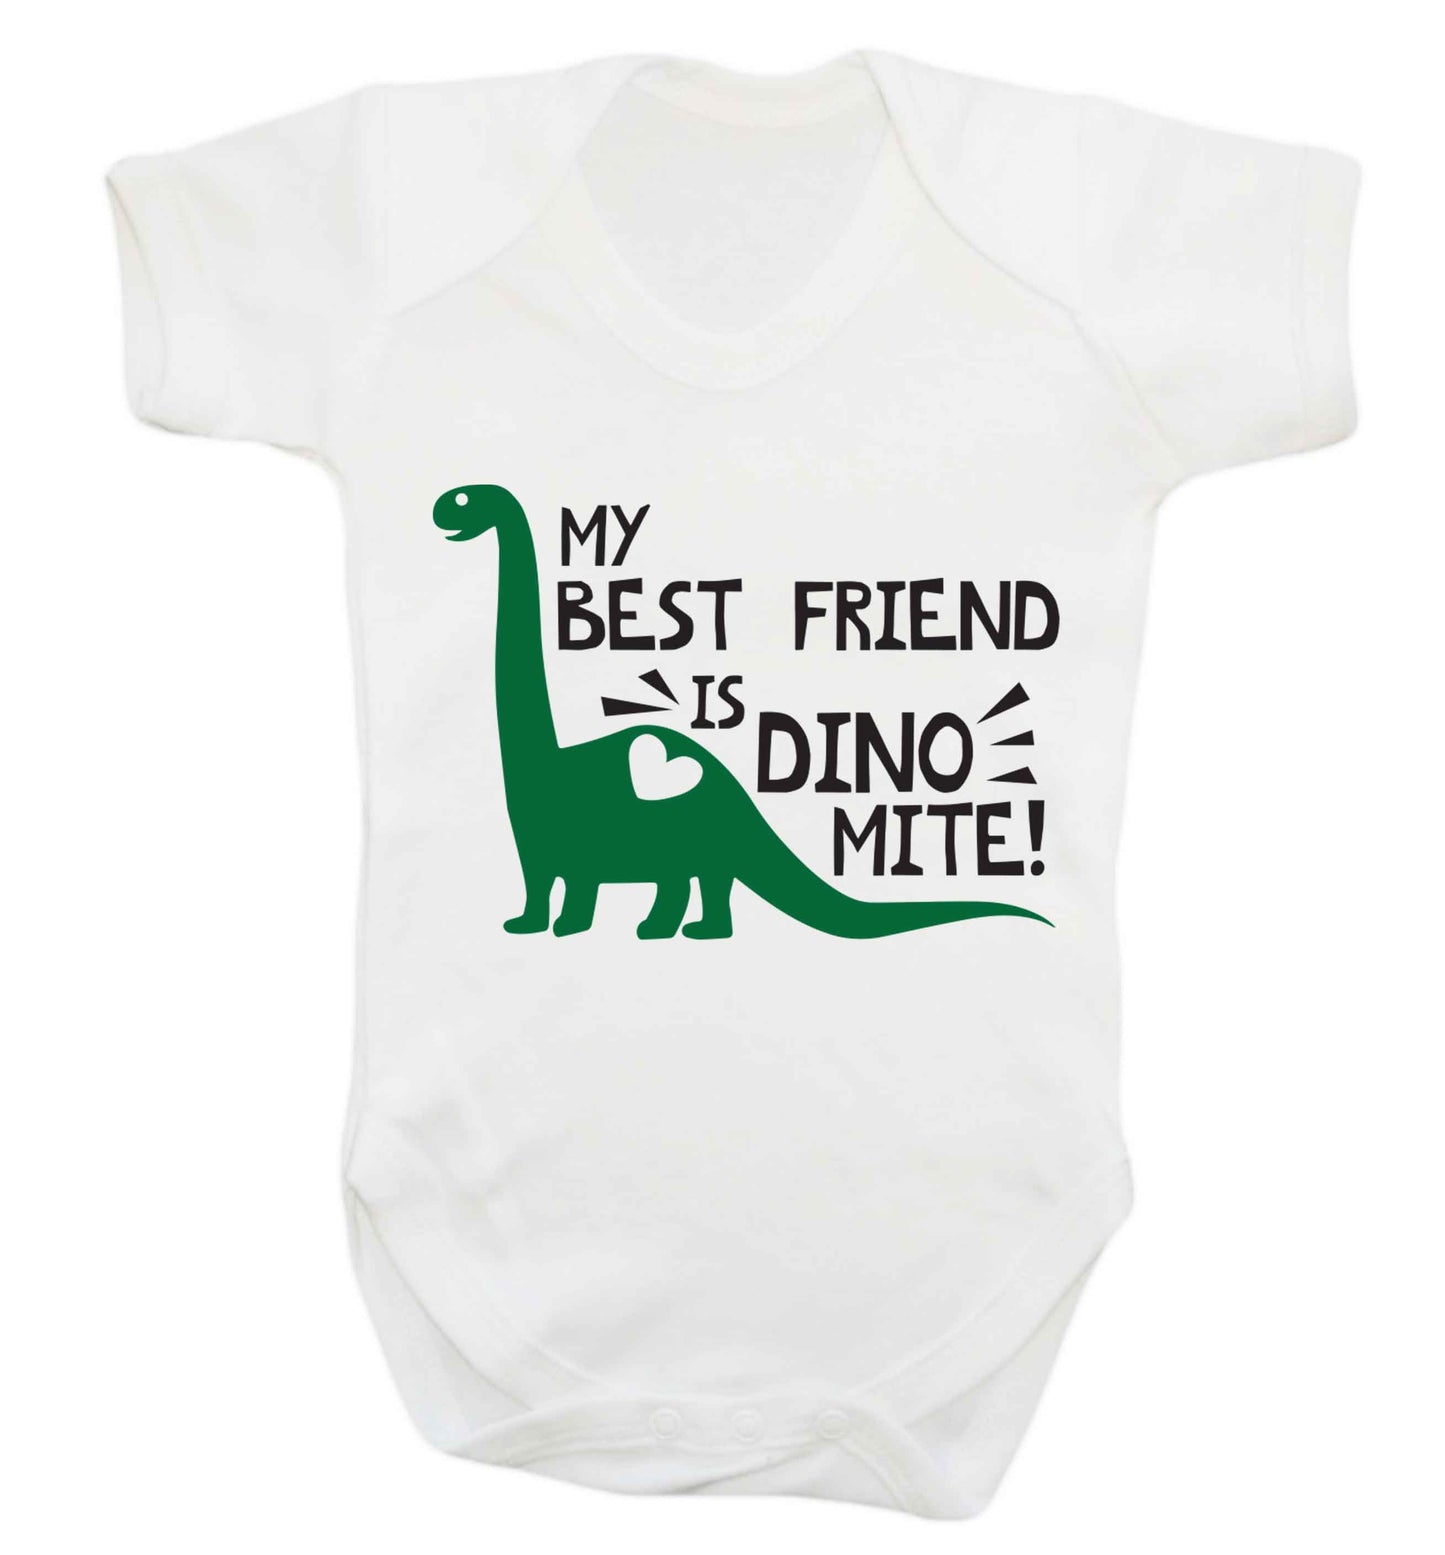 My best friend is dinomite! Baby Vest white 18-24 months